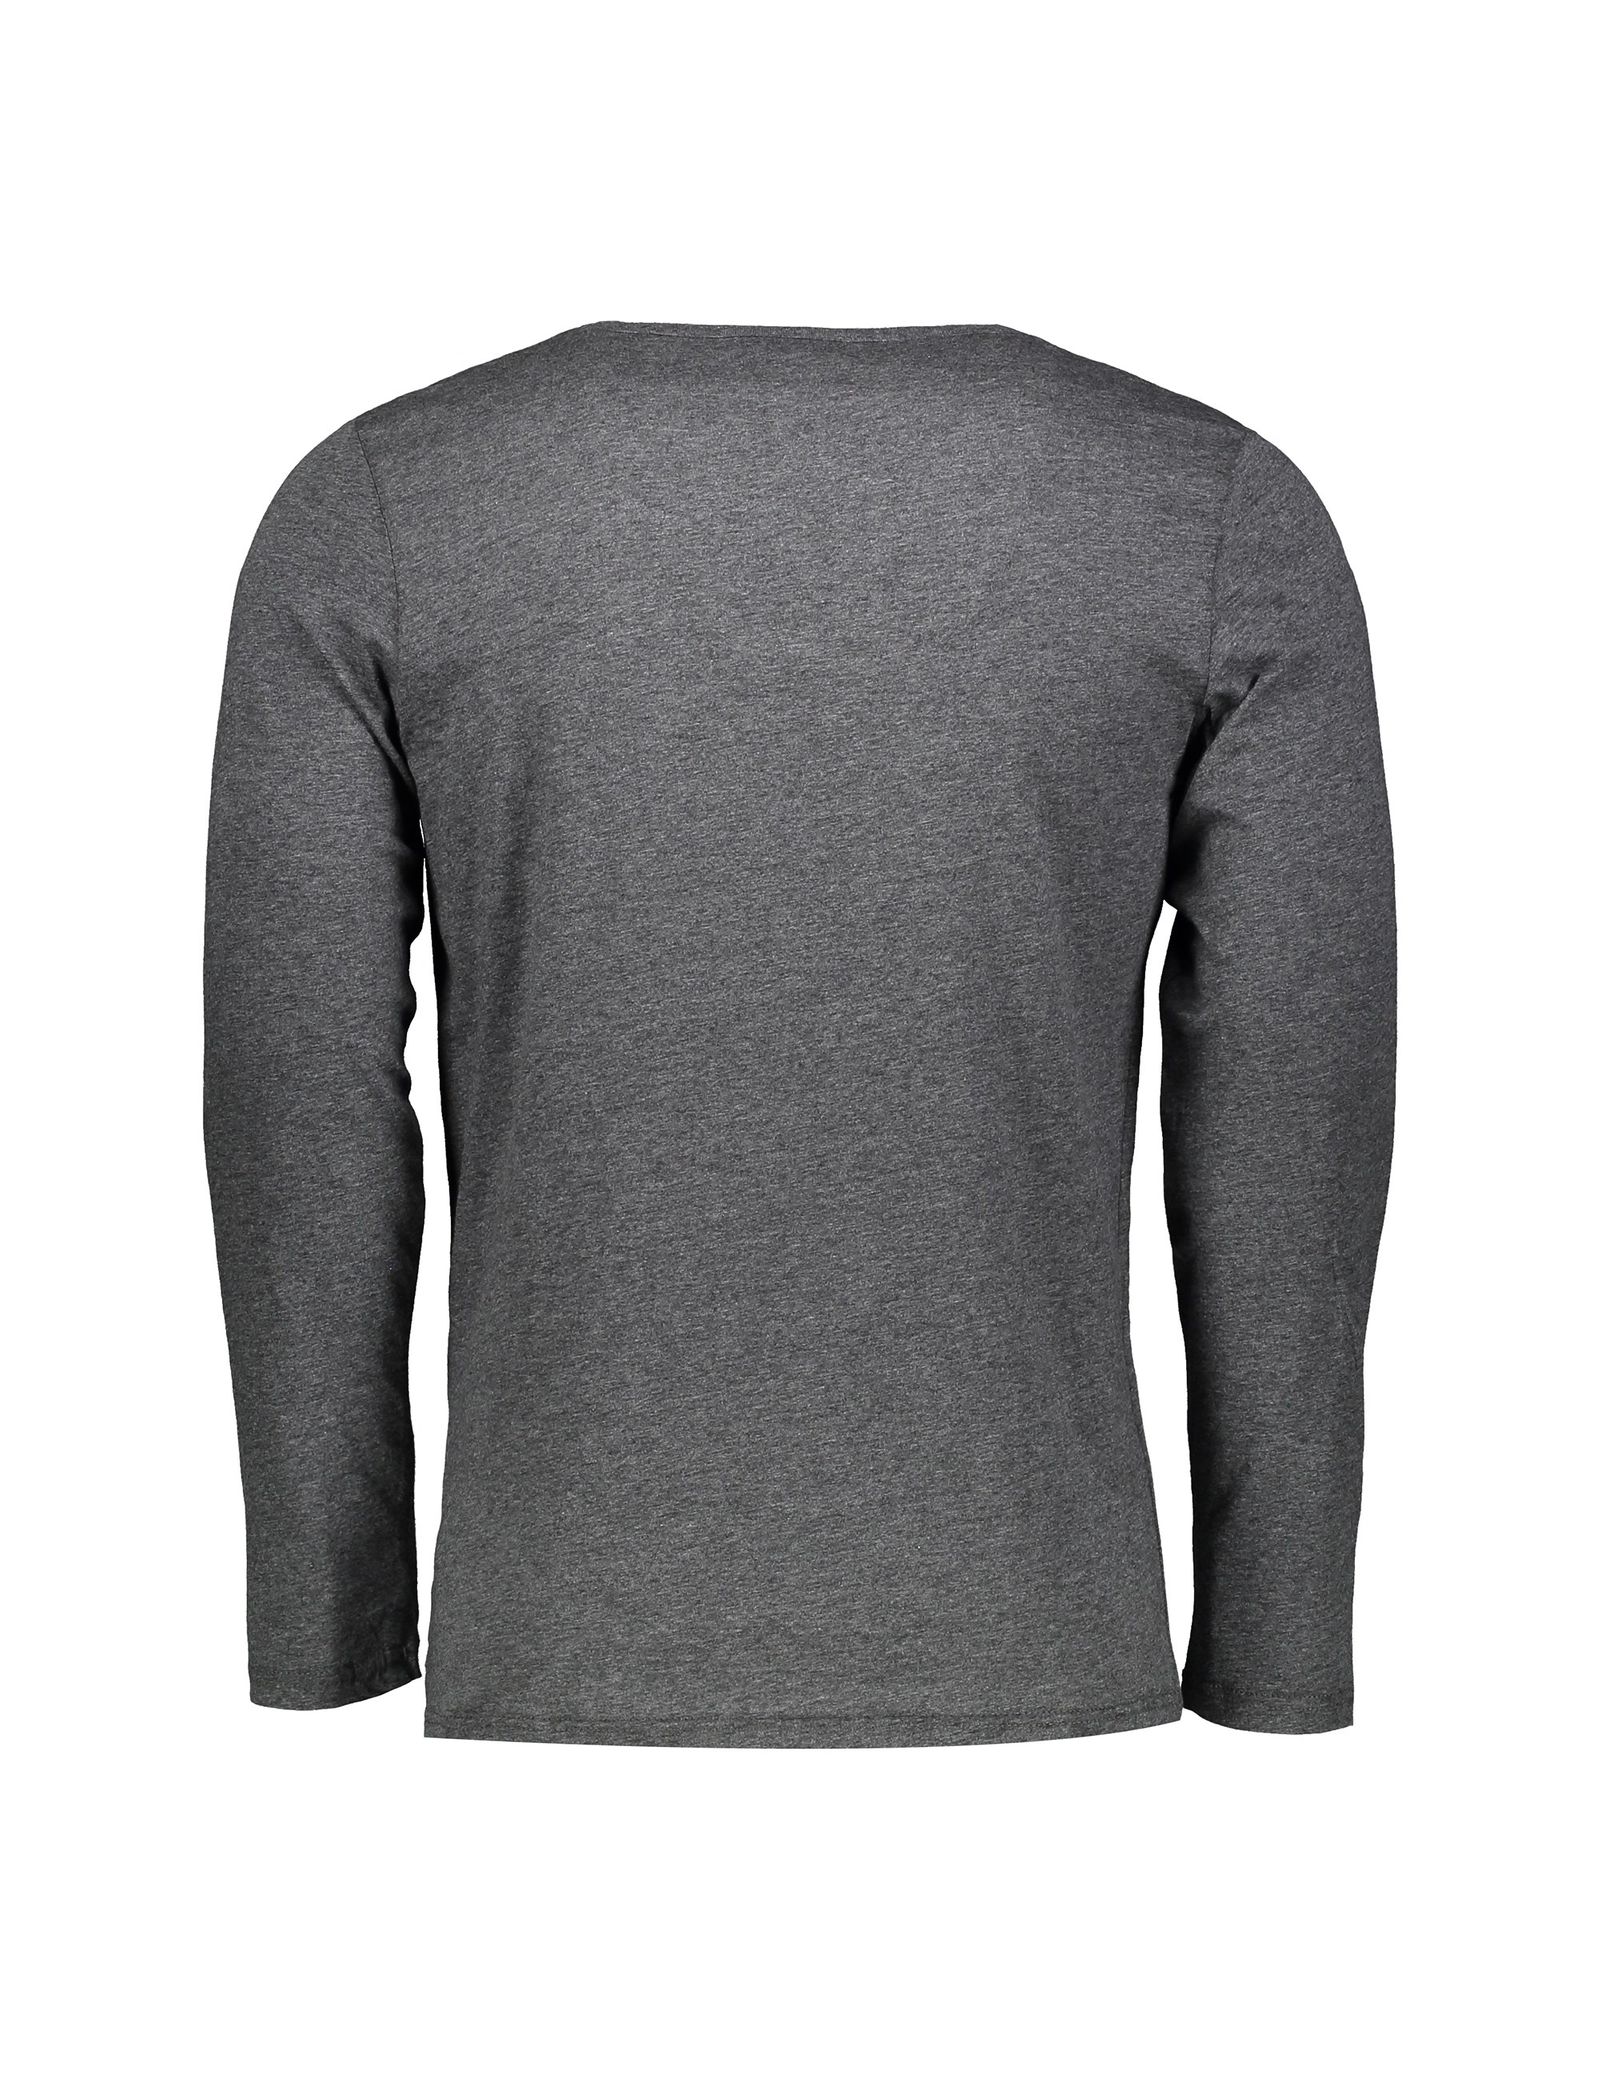 تی شرت و شلوار راحتی مردانه - سلیو - زغالي - 4